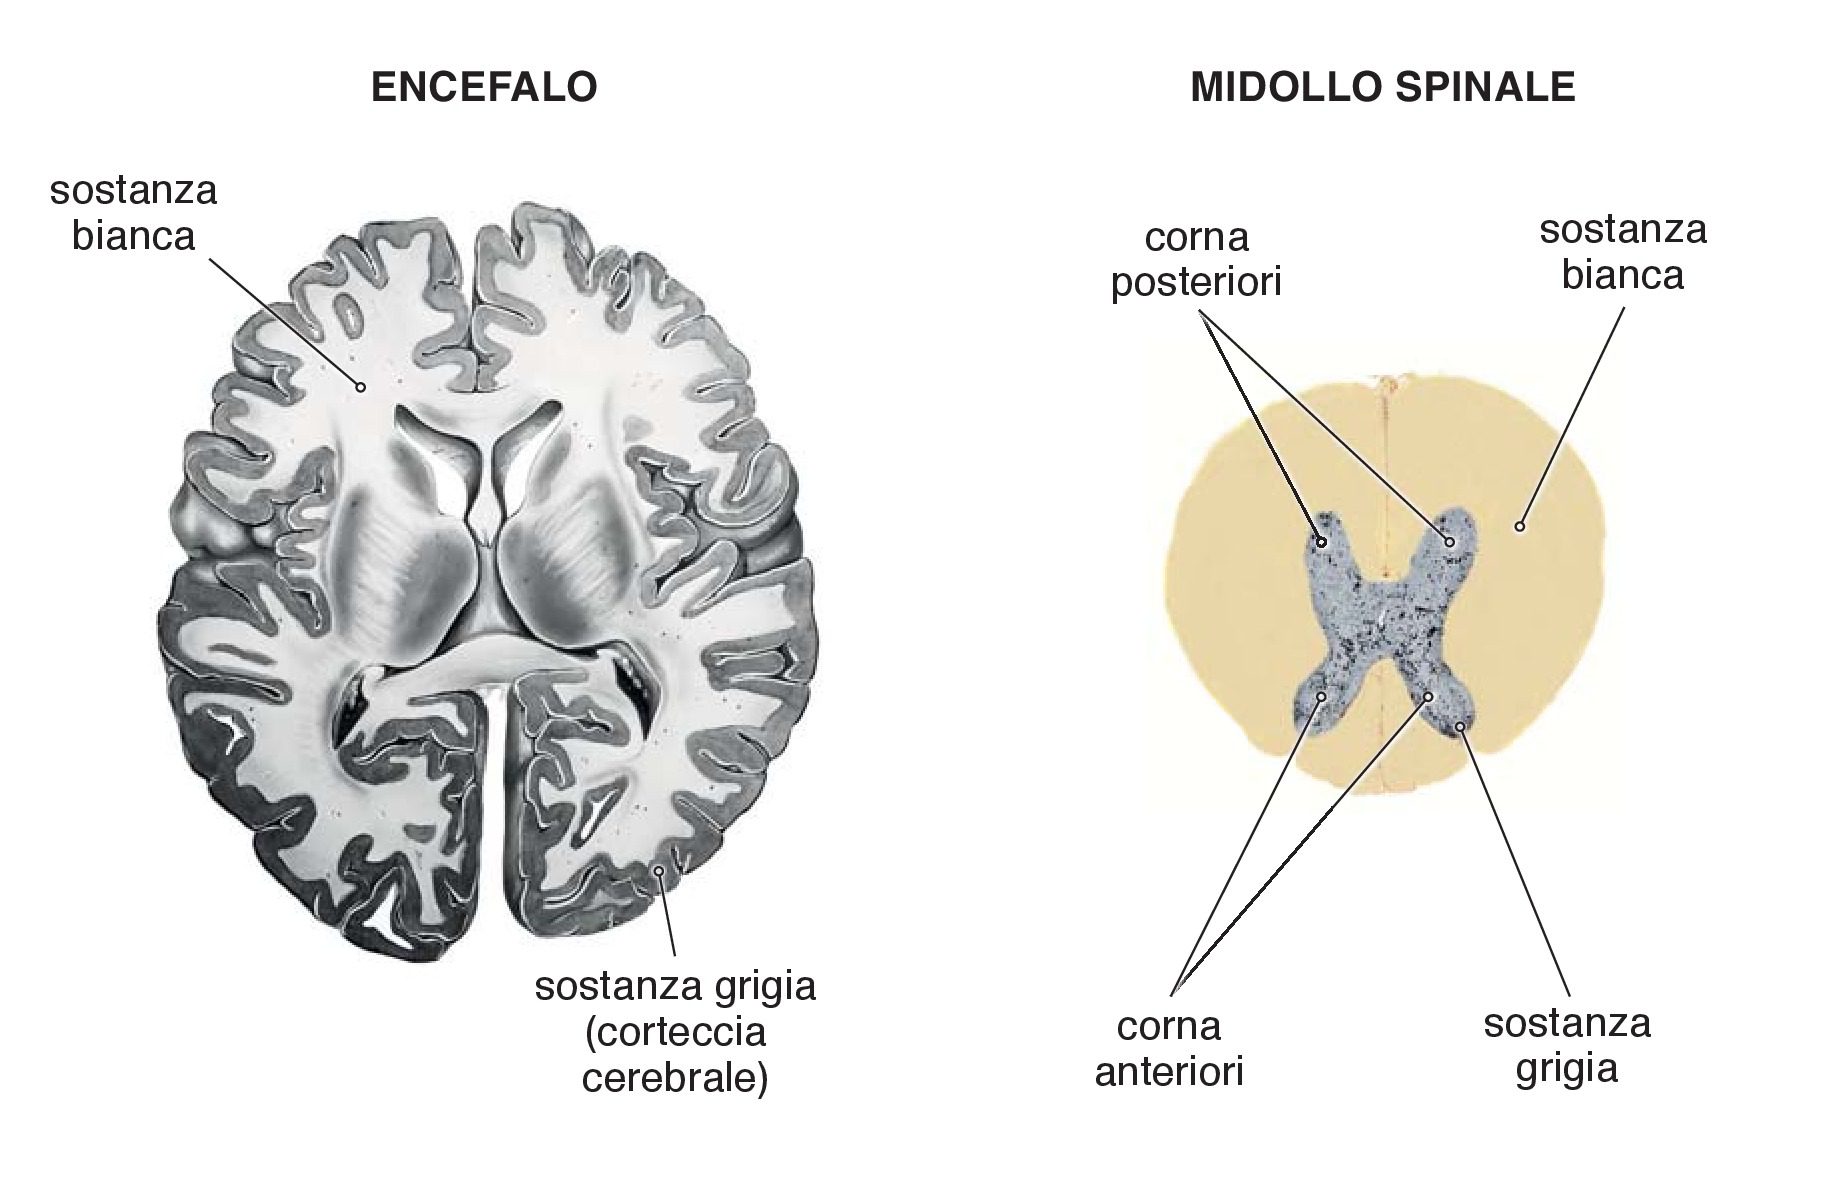 Immagine illustrativa della distribuzione della sostanza bianca e della sostanza grigia rispettivamente nell’encefalo e nel midollo spinale. la sostanza grigia è formata da corpi cellulari dei neuroni che appaiono grigi poiché privi di mielina. La sostanza bianca è formata, al contrario, da neuriti rivestiti da mielina. Nell’encefalo, la sostanza grigia, più esterna, forma la corteccia cerebrale, nel midollo spinale la sostanza grigia, più interna, forma una sorta di H.